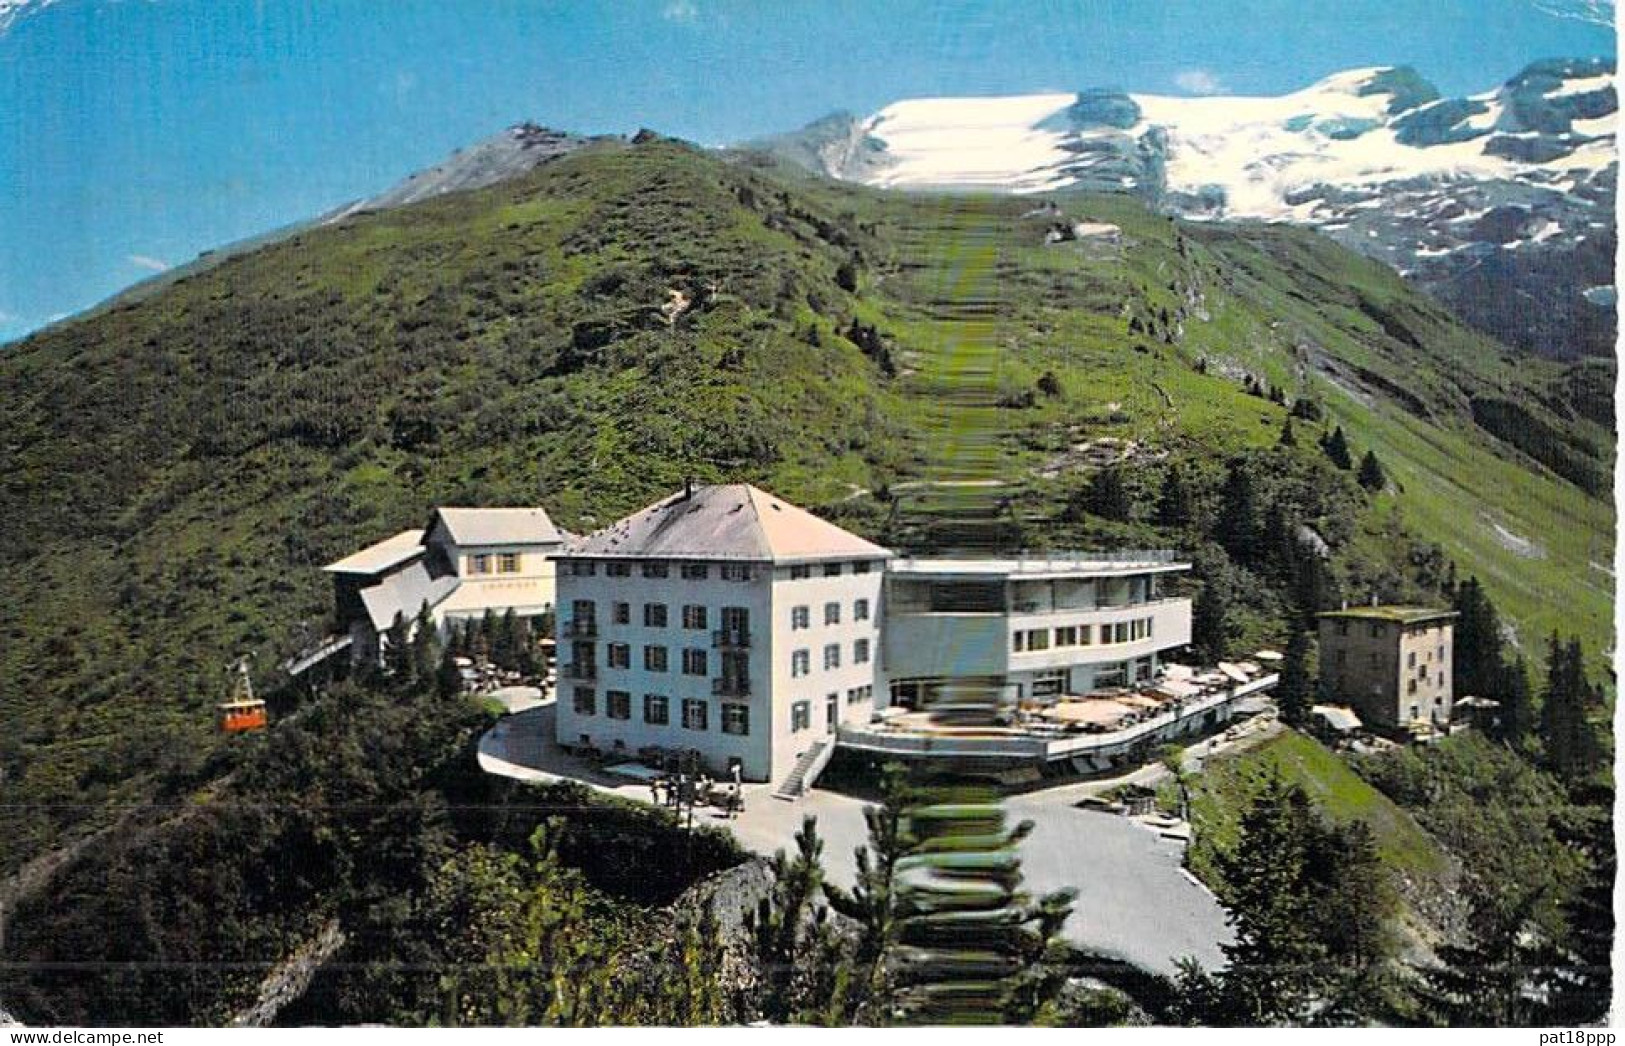 SUISSE - Lot de 35 CPSM GF HOTEL RESTAURANT : Tous Cantons sauf BE VS VD GR (0.14 €/carte) Swiss Switzerland Schweiz